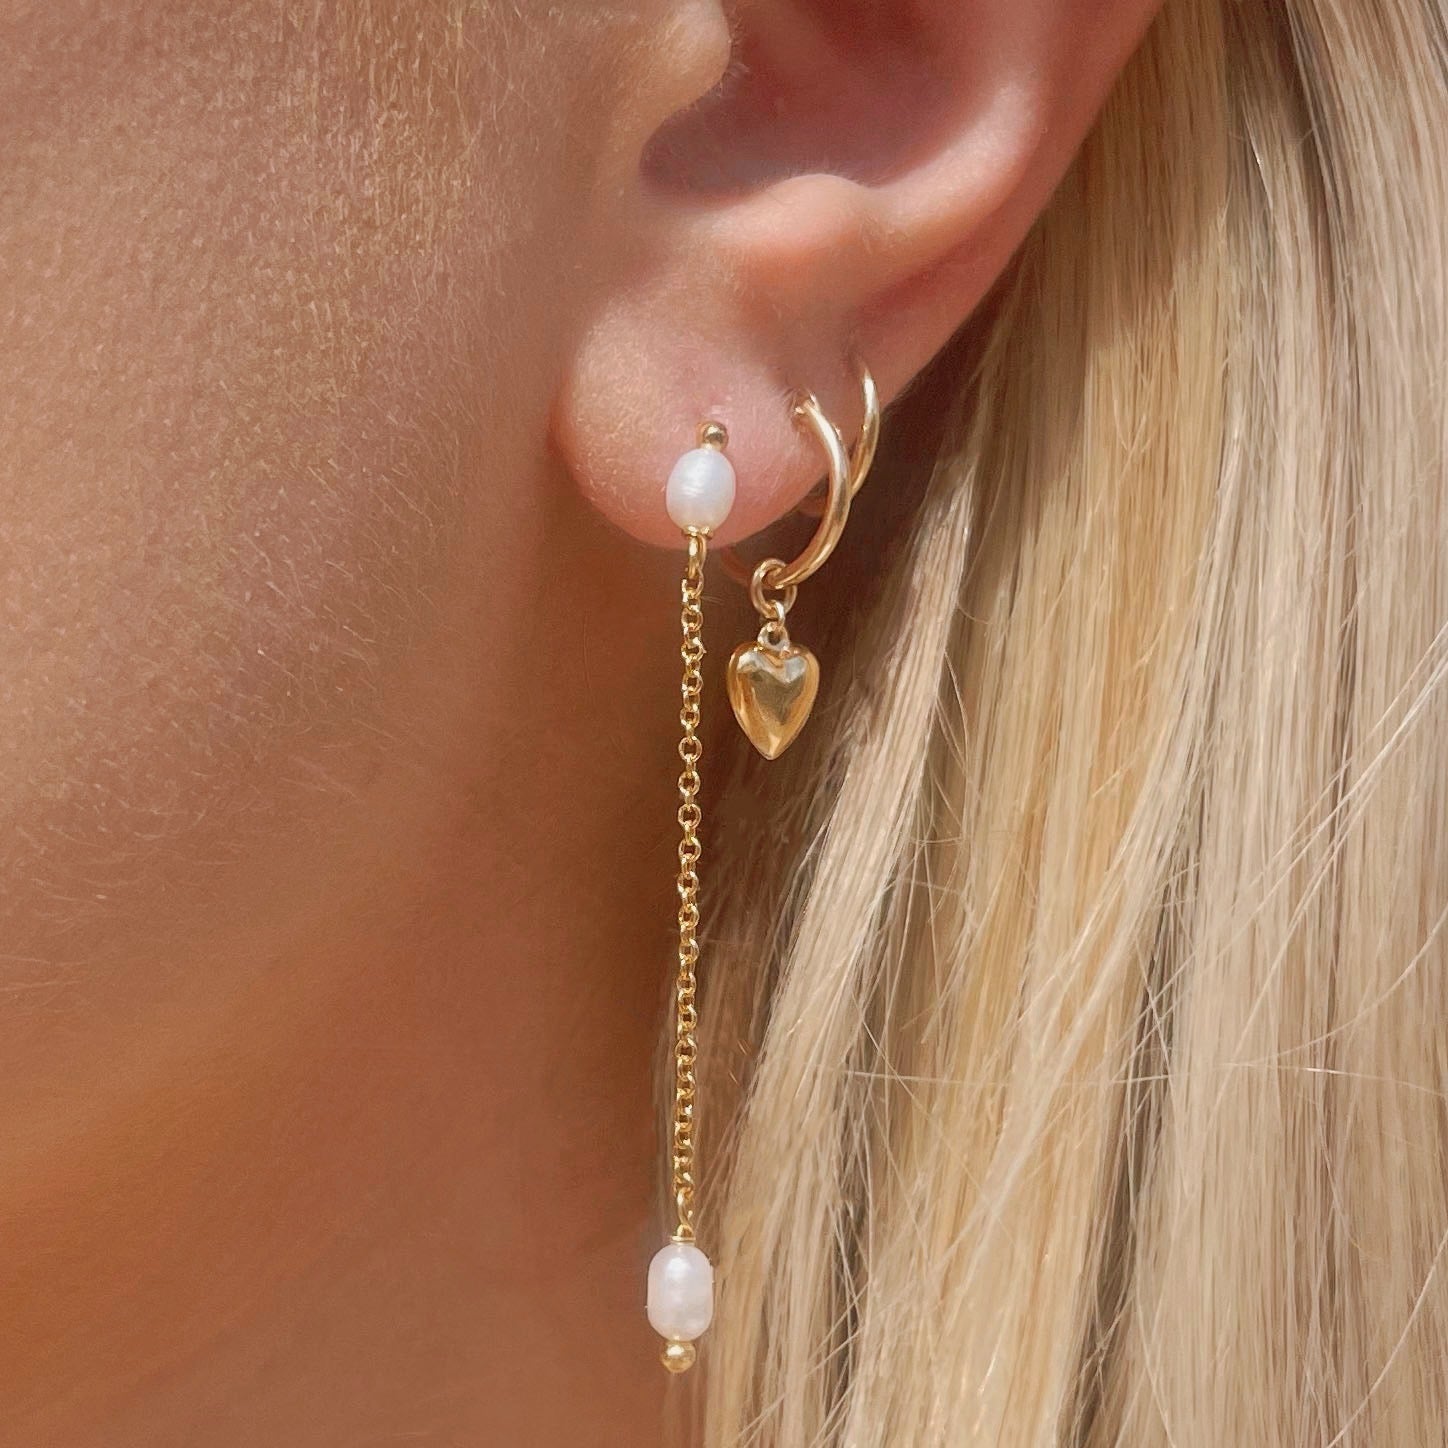 The Pearla Earrings by Mod + Jo